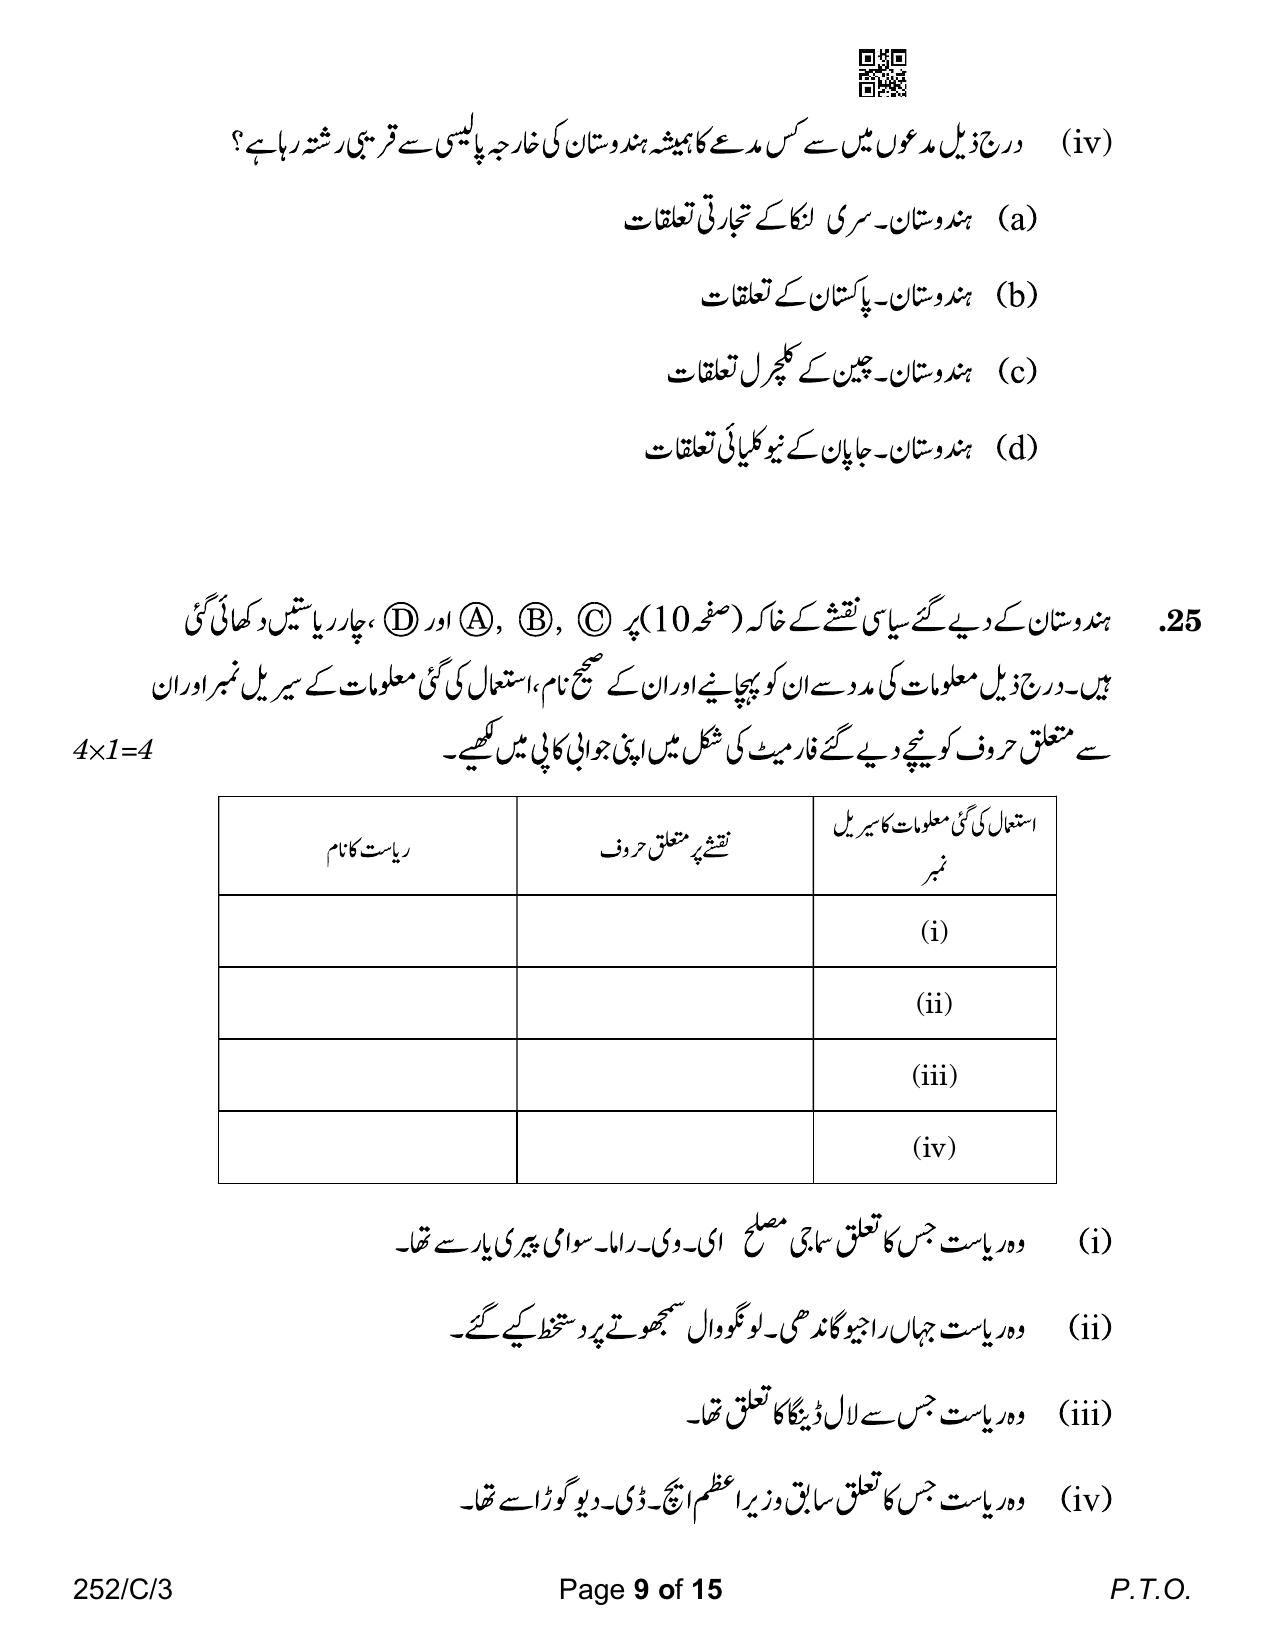 CBSE Class 12 252-3 Political Science Urdu Version 2023 (Compartment) Question Paper - Page 9